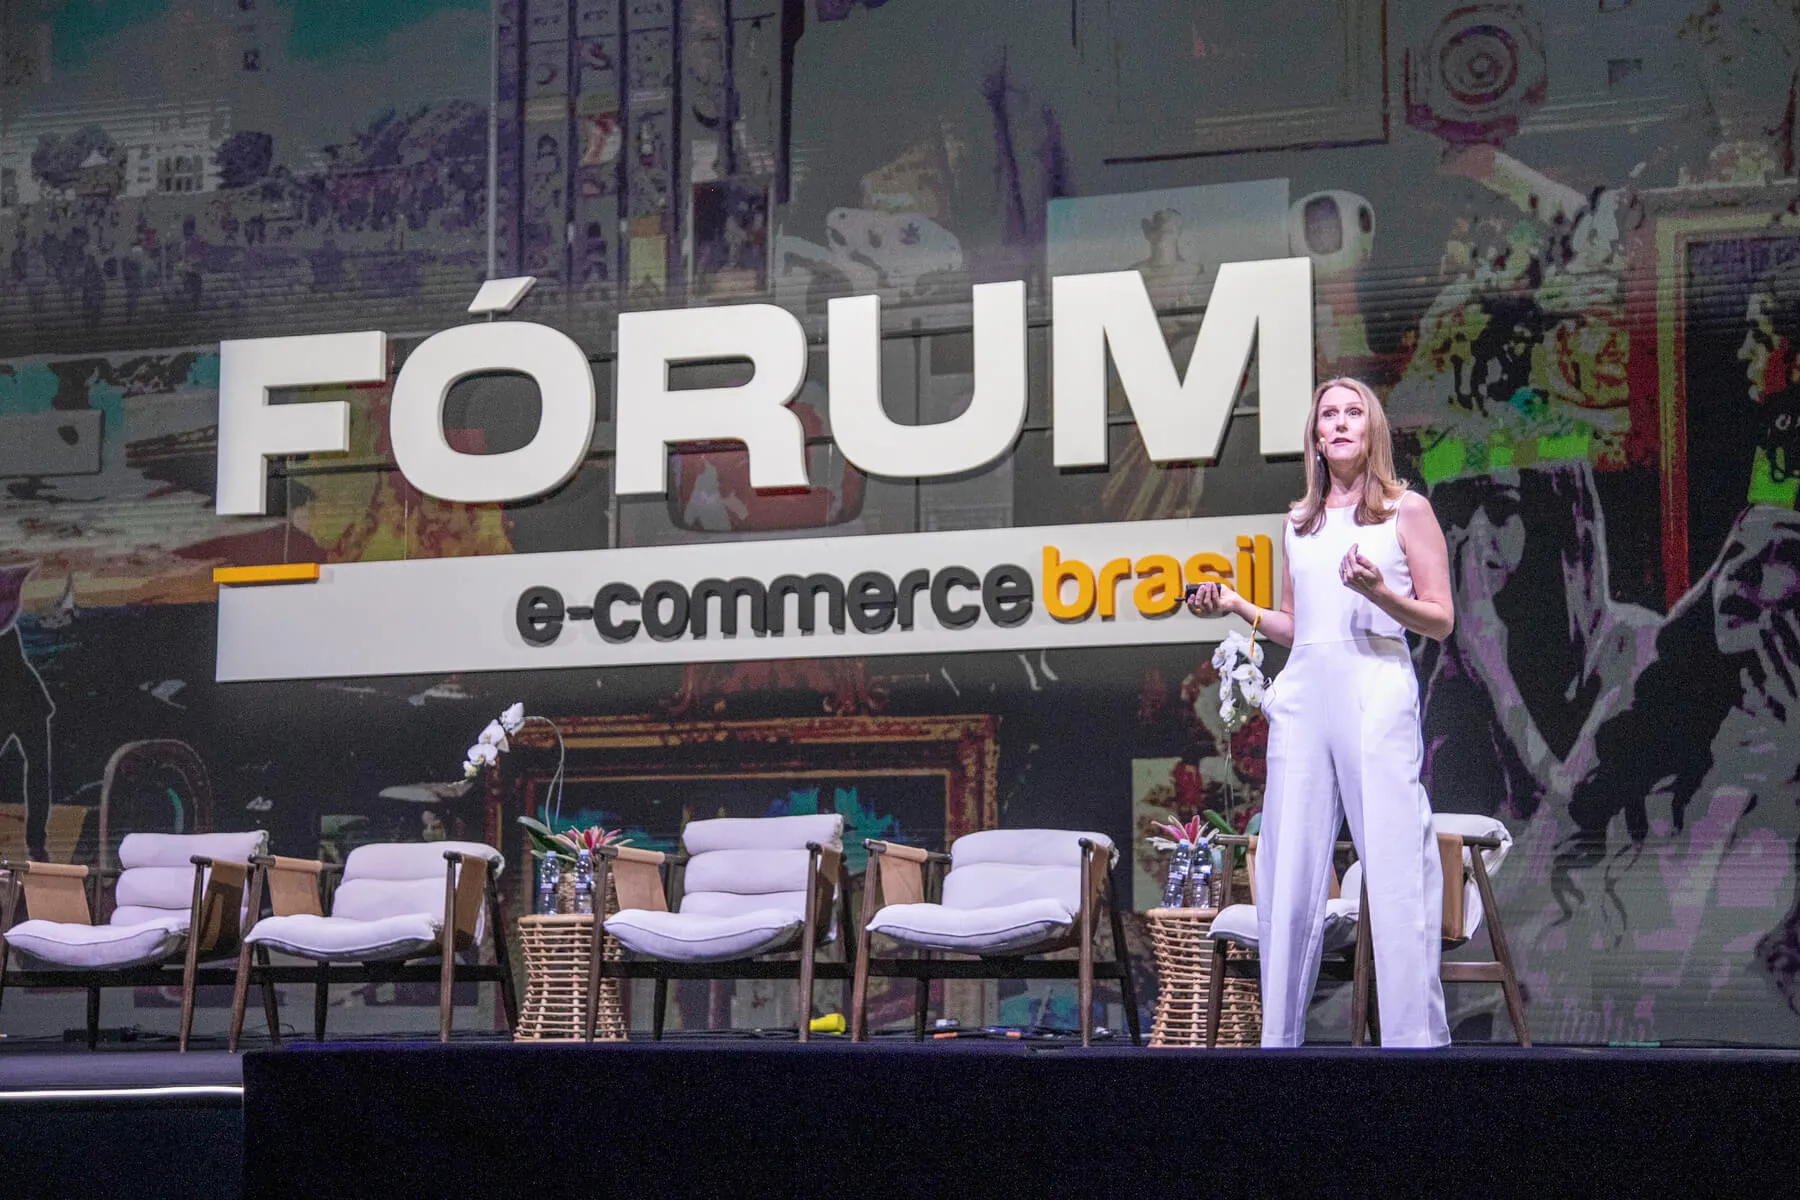 Brasil será a próxima grande potência do e-commerce, segundo Zia Wigder da eMarketer